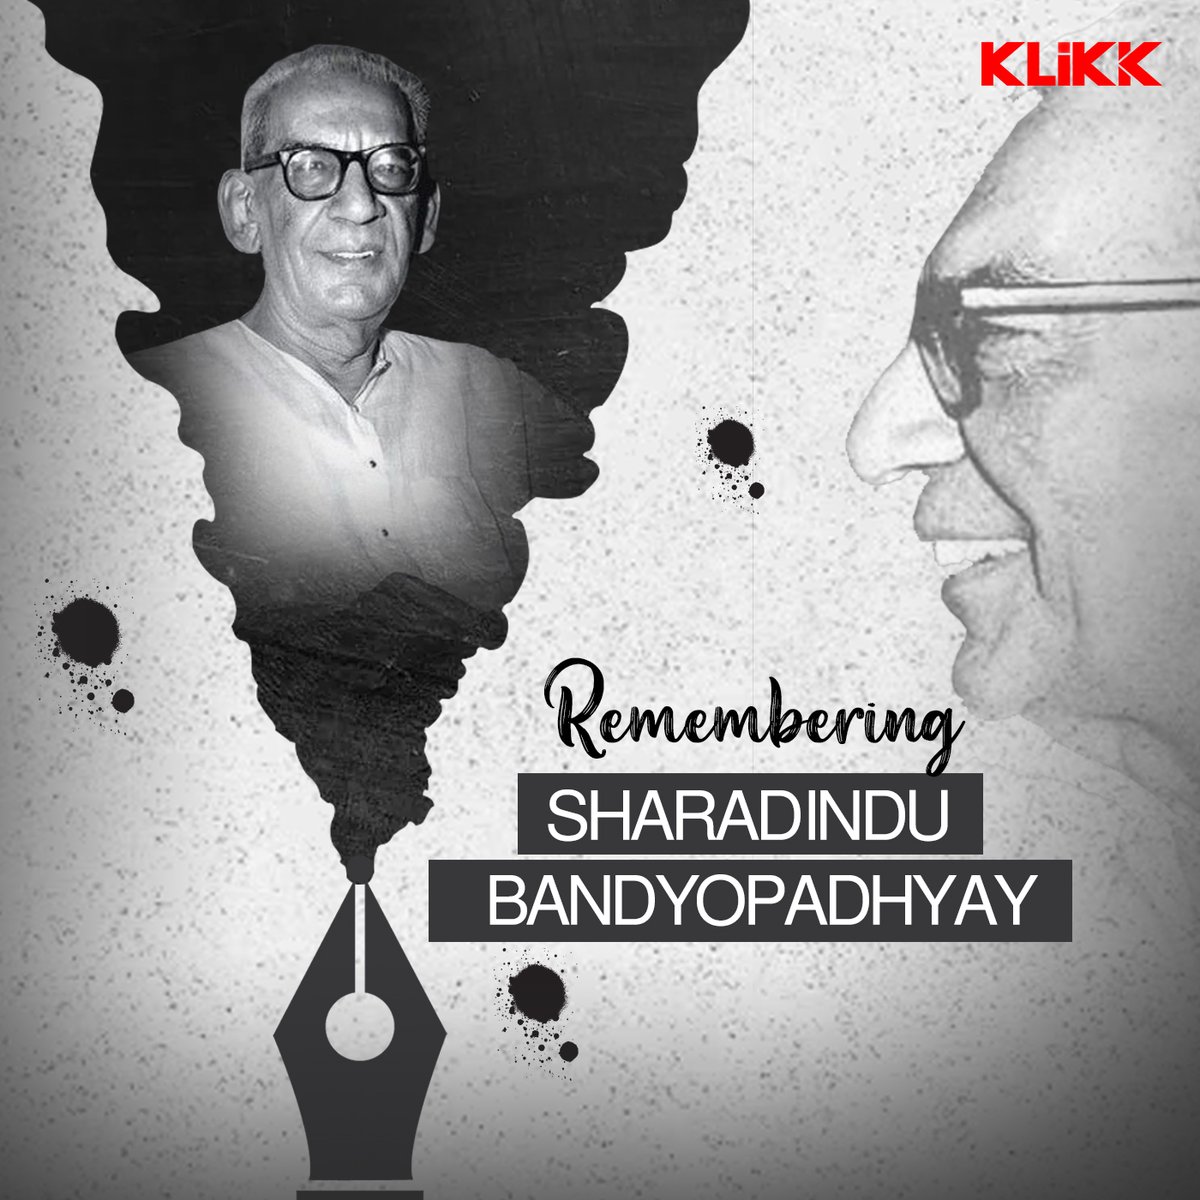 Remembering the Master Storyteller the Legendary Writer, Sharadindu Bandyopadhyay on his birth anniversary📚✨ #Klikk